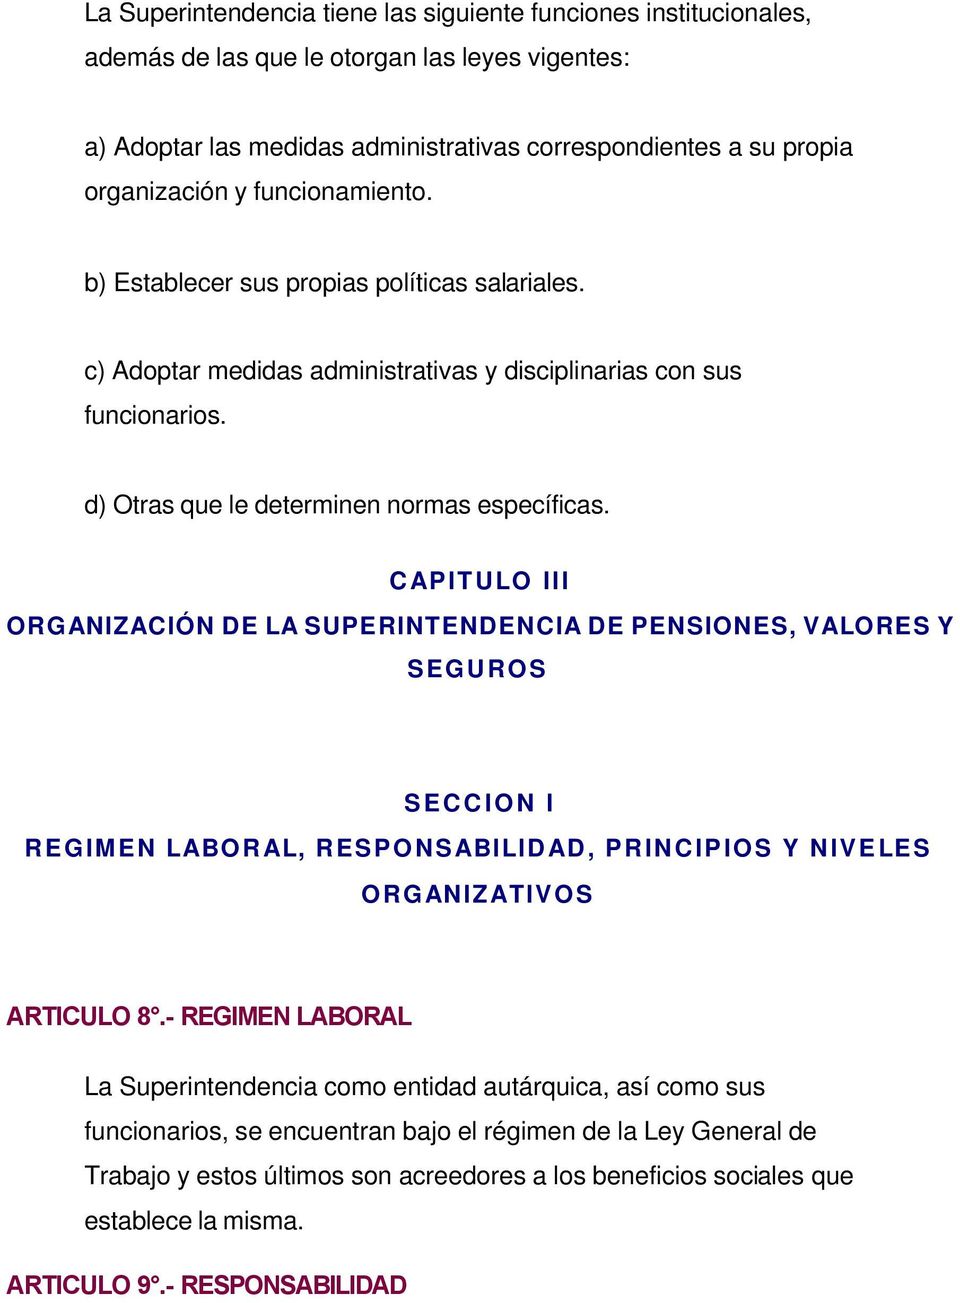 CAPITULO III ORGANIZACIÓN DE LA SUPERINTENDENCIA DE PENSIONES, VALORES Y SEGUROS SECCION I REGIMEN LABORAL, RESPONSABILIDAD, PRINCIPIOS Y NIVELES ORGANIZATIVOS ARTICULO 8.